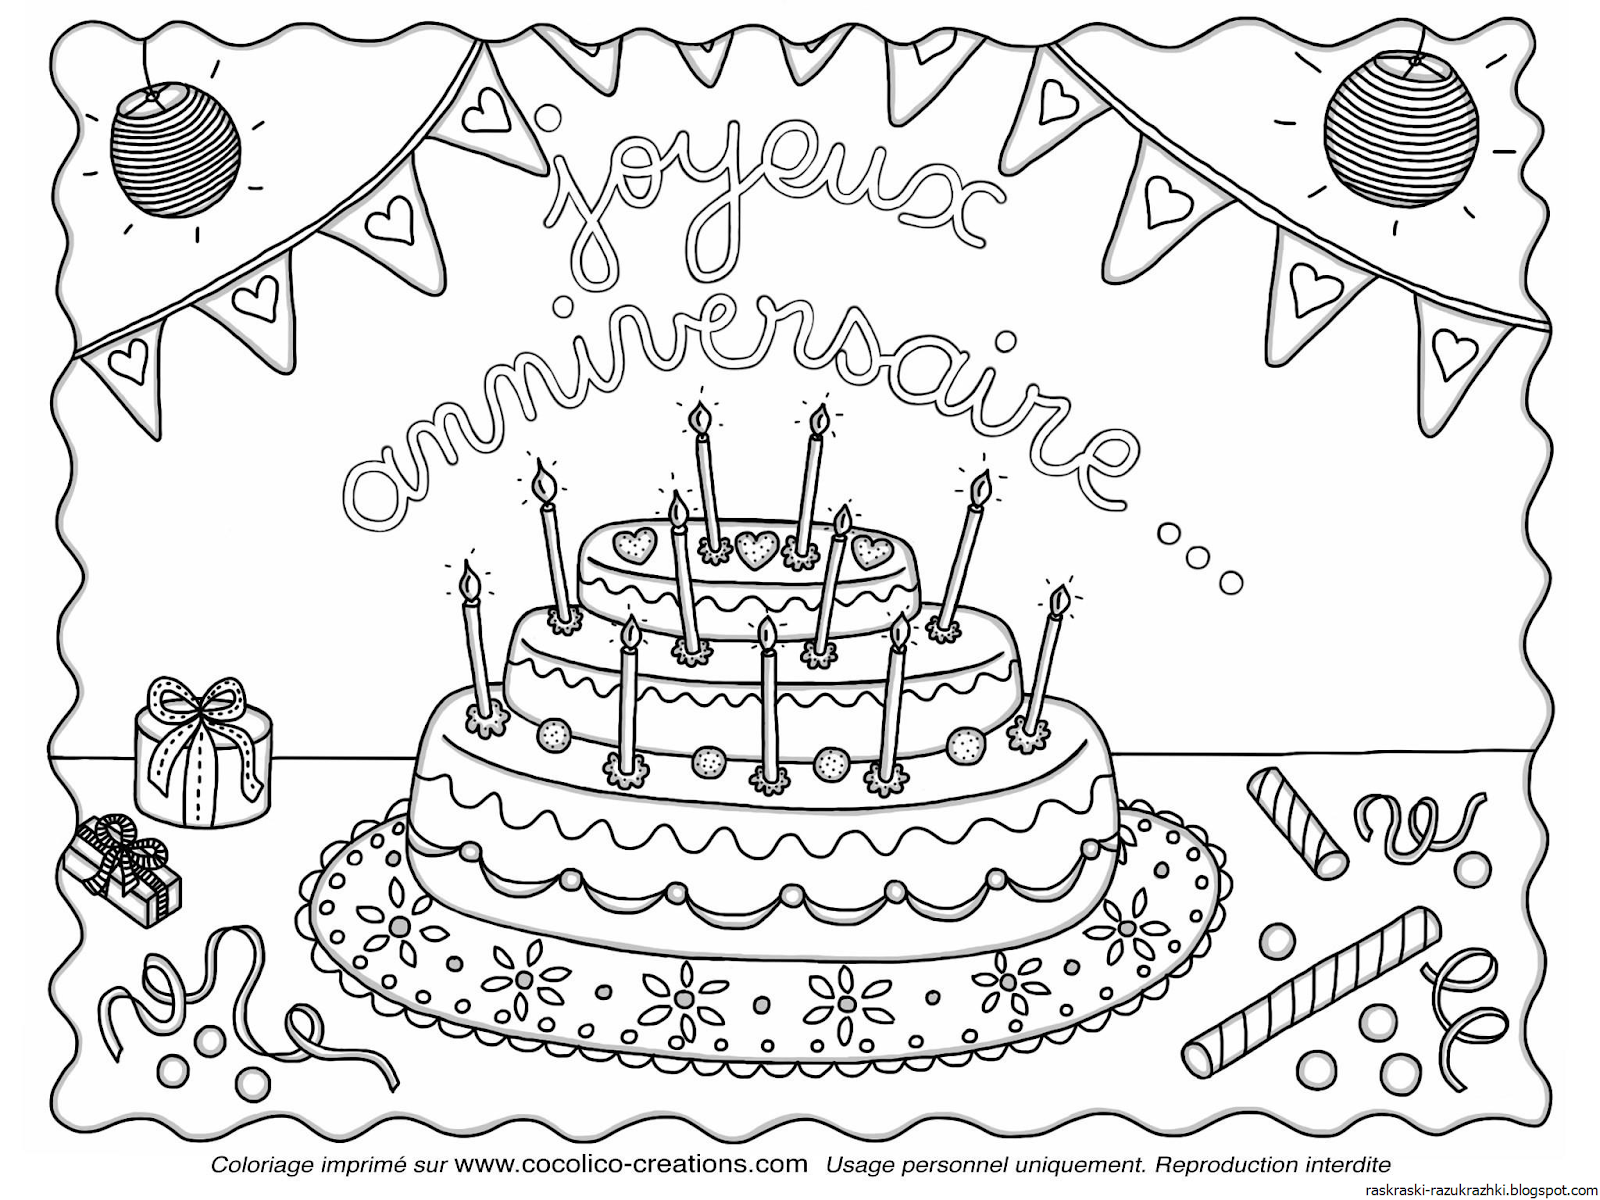 Рисунок на день рождения. Раскраска "с днем рождения!". Рисунки для раскрашивания с днем рождения. Рисунок на день рождения легкий. Открытки с днем рождения 37 лет